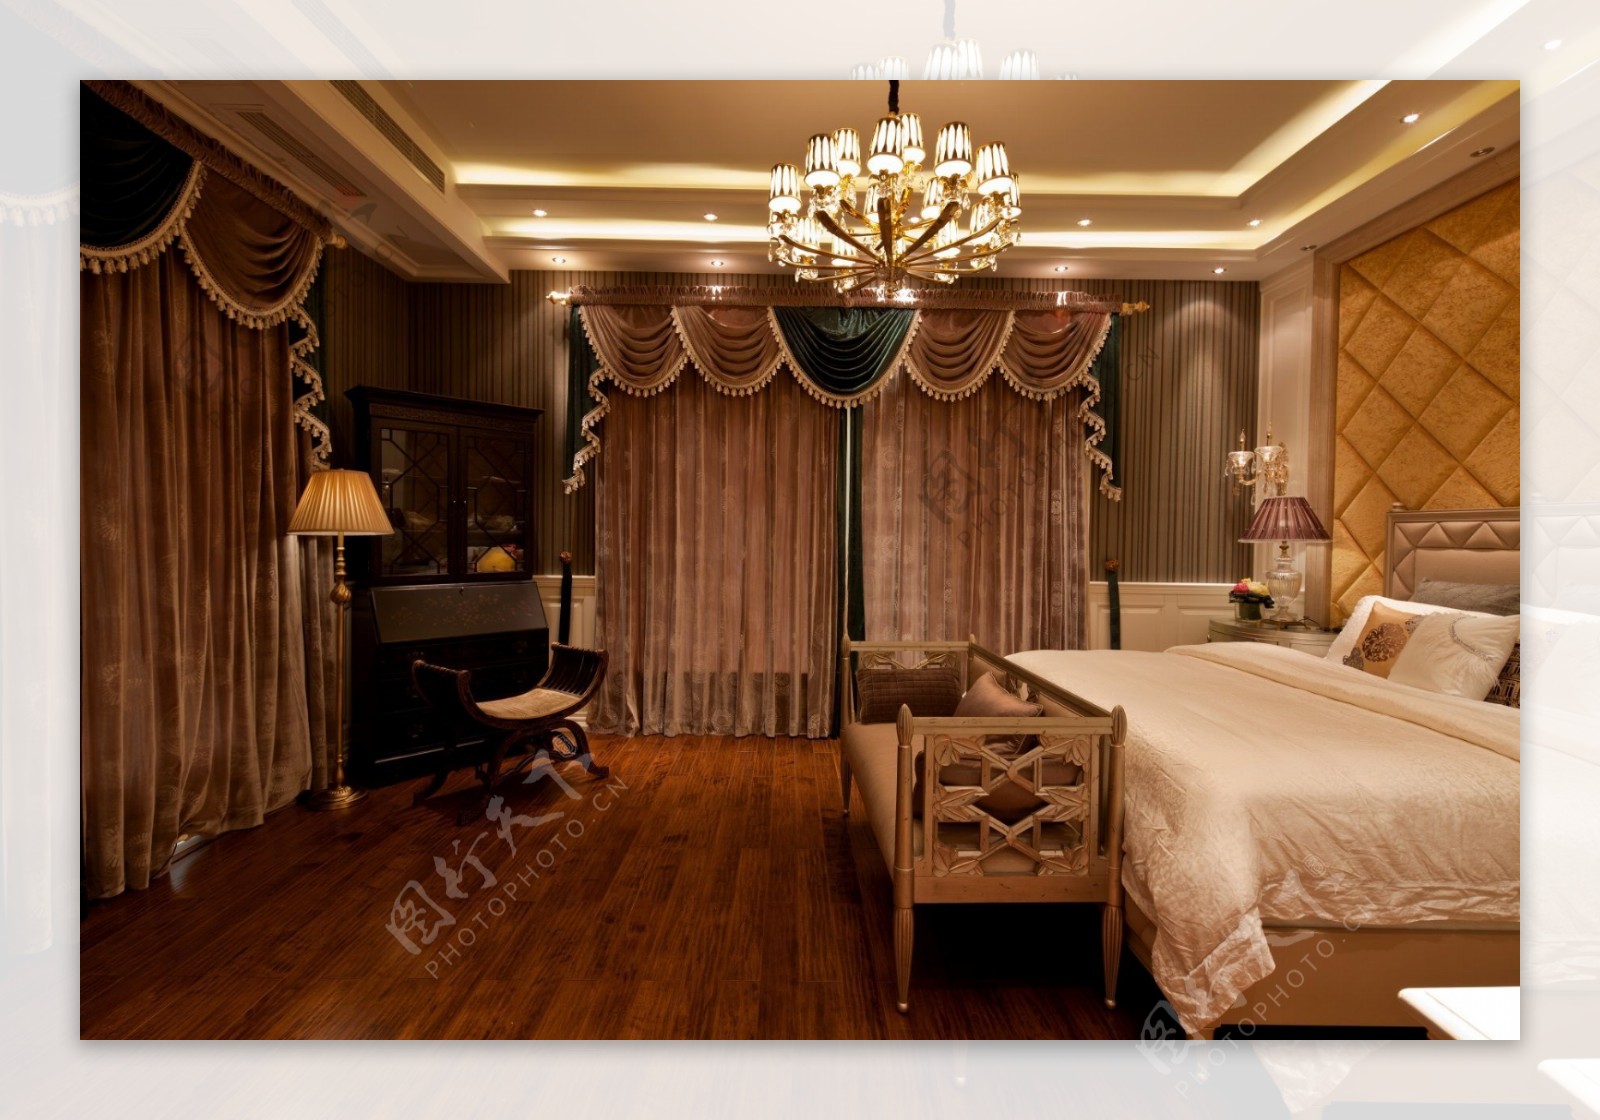 现代时尚卧室褐色金边窗帘室内装修效果图